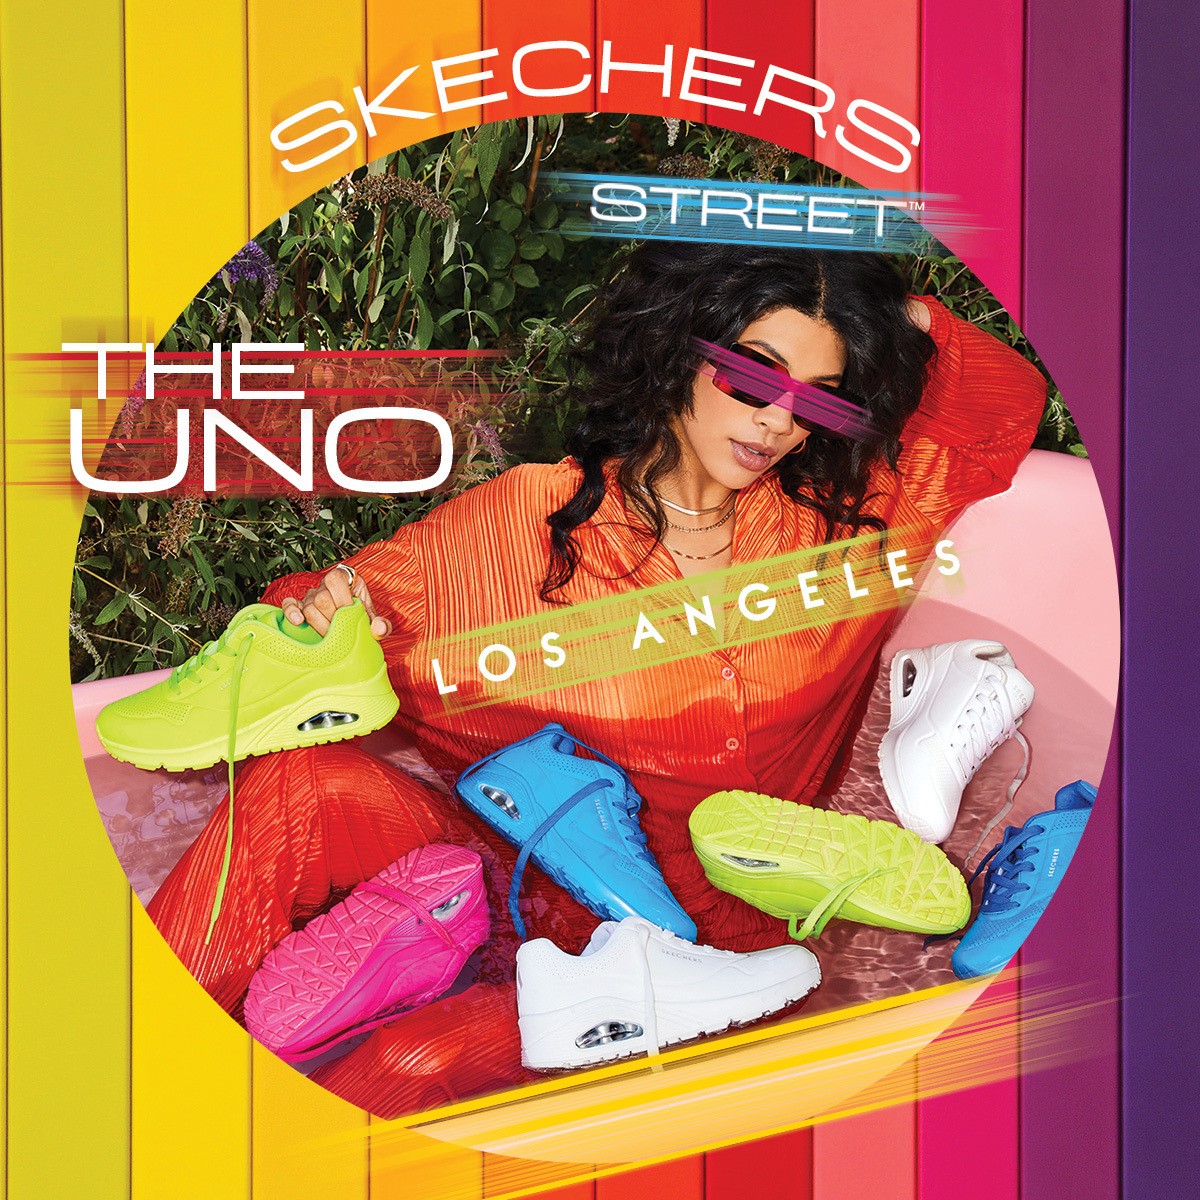 Skechers “trình làng” bộ sưu tập giày UNO mới với 7 sắc màu cực trẻ trung - ảnh 2